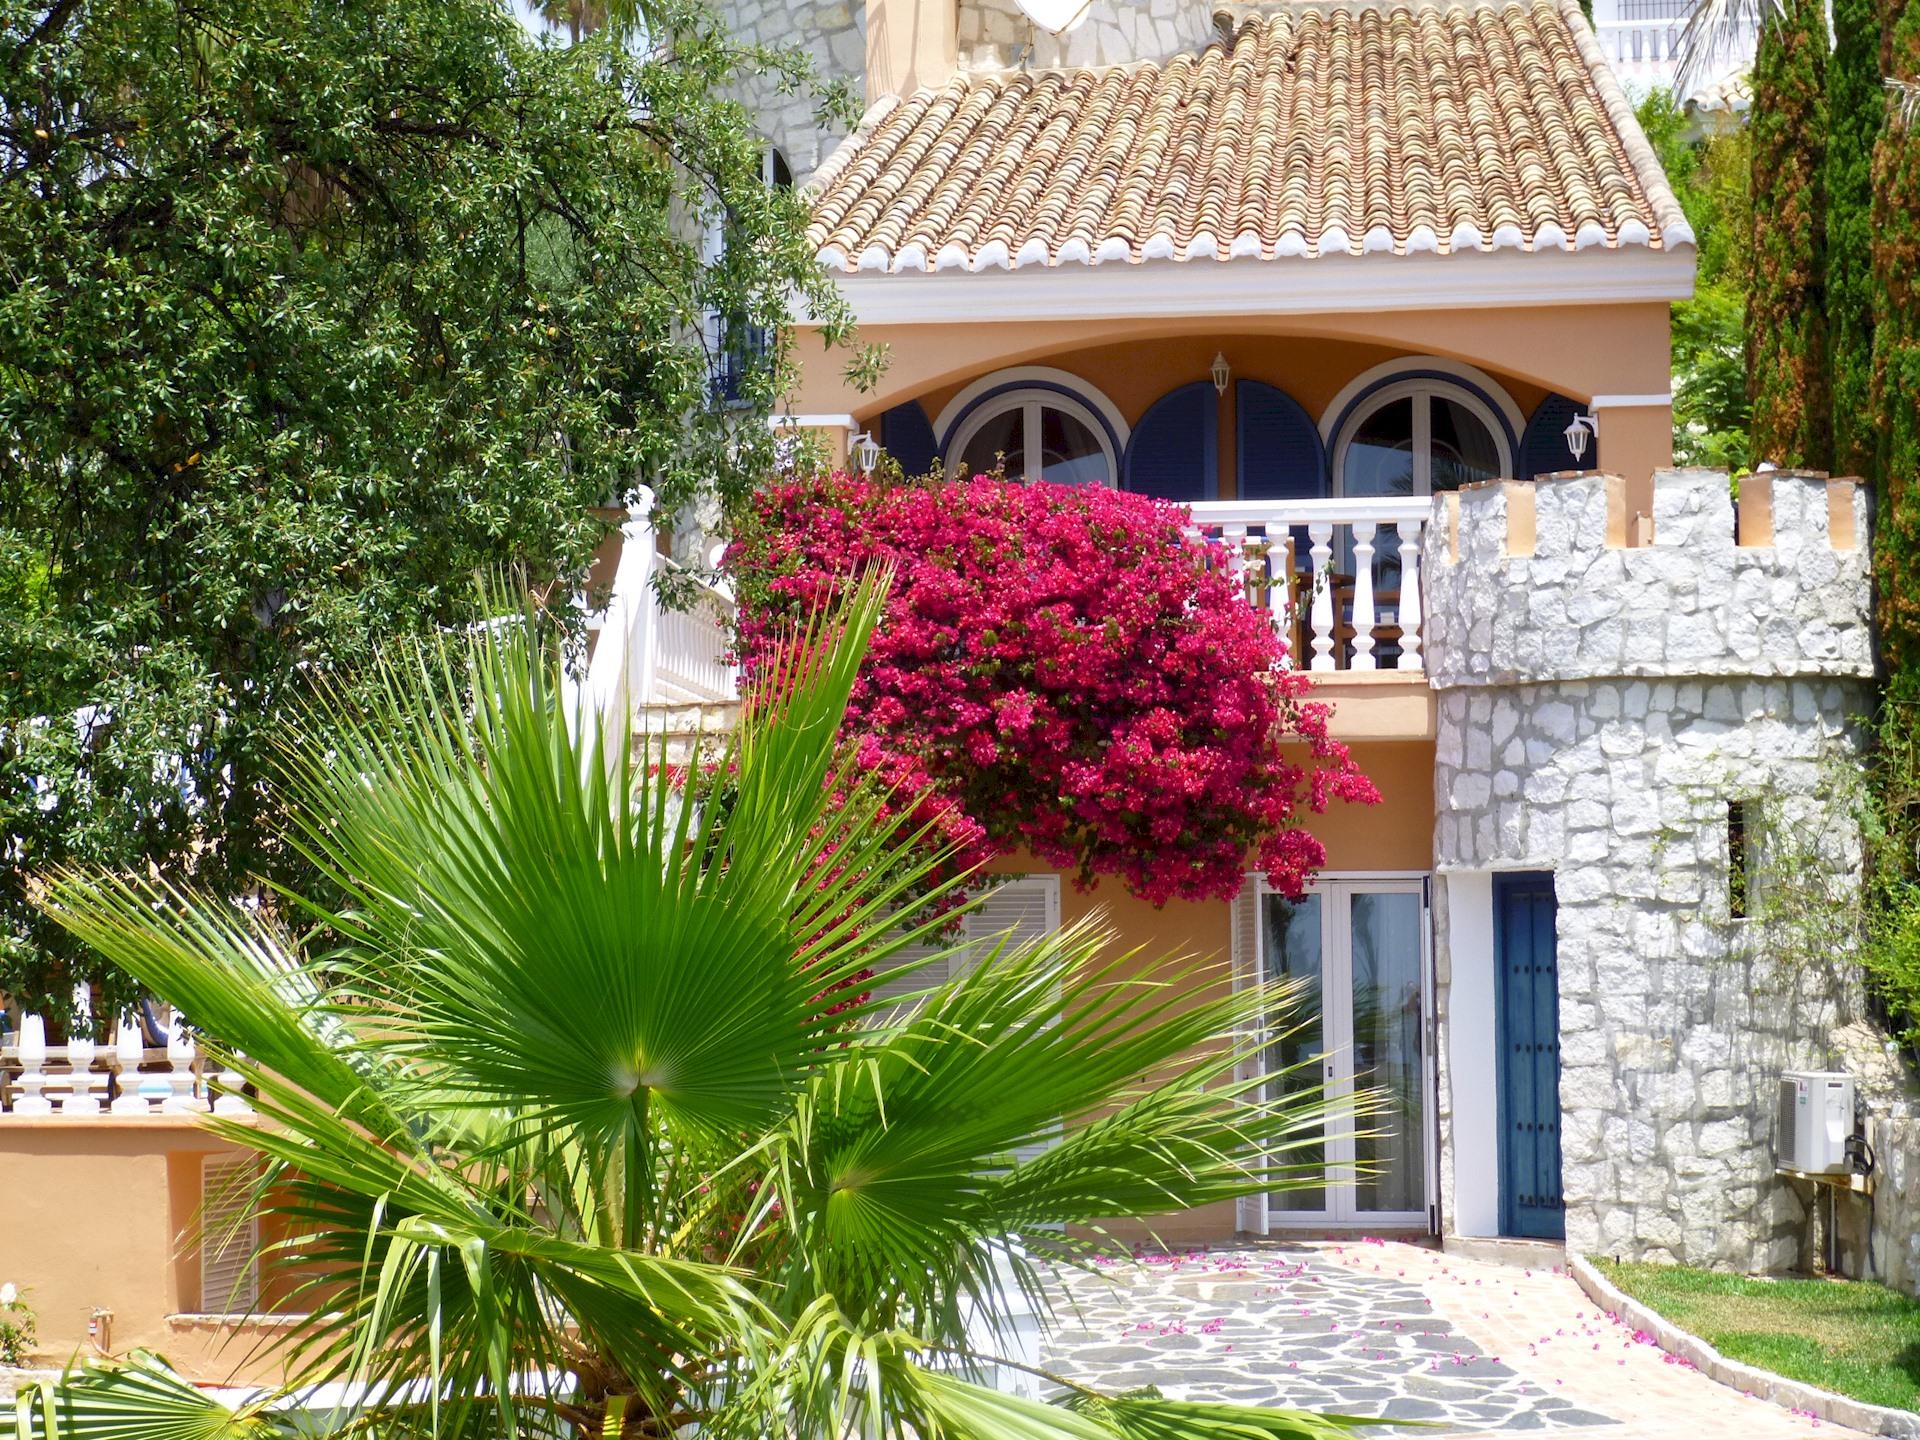 Ferienhaus mit Privatpool für 8 Personen ca.  Ferienhaus in Spanien